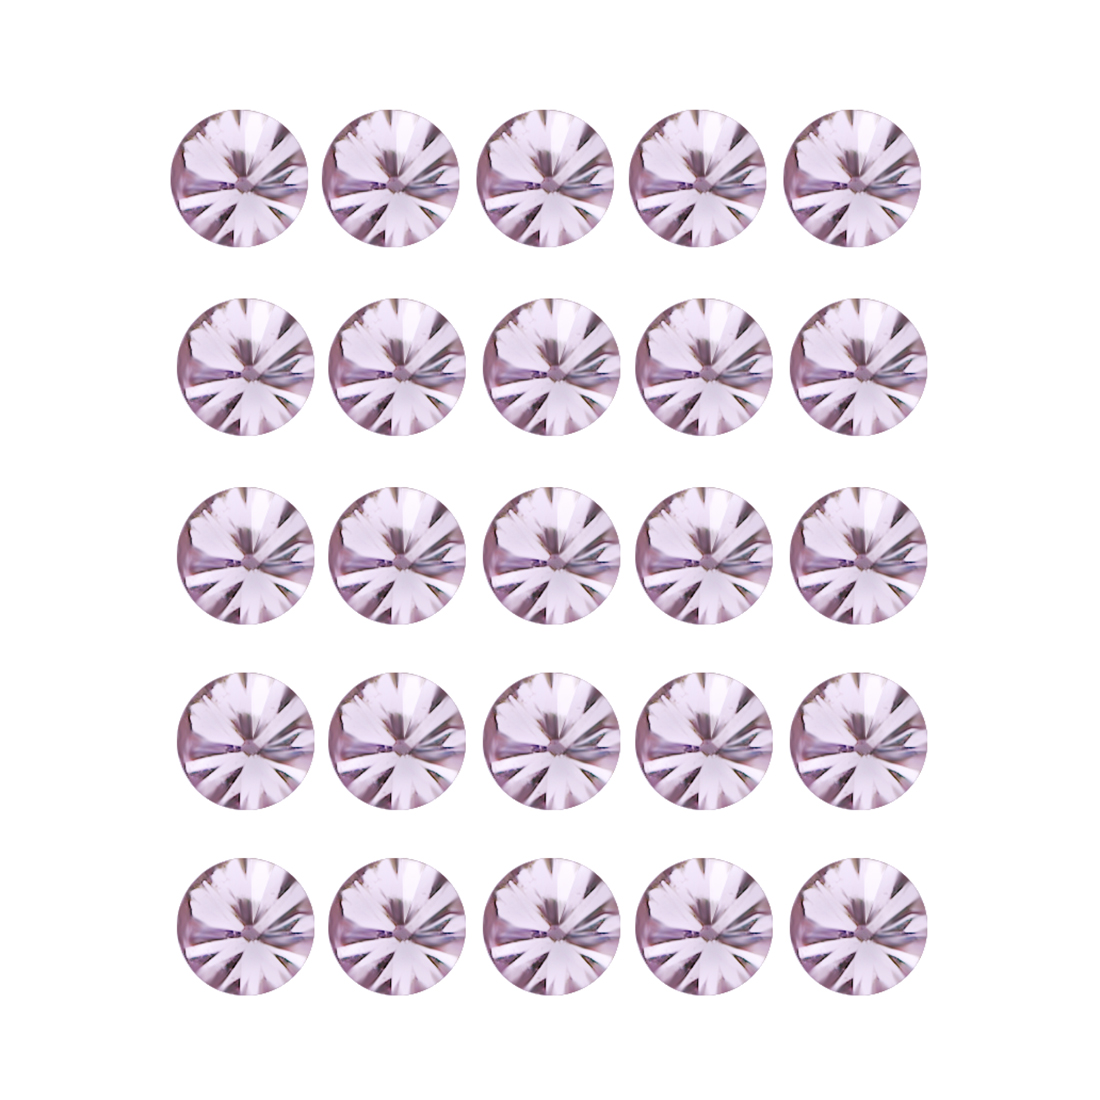 0.07Ct 25Pcs Lot Round 0.95 mm Untreated Australian - Argyle Purple Pink Diamond Natychmiastowa dostawa w zwykłym sklepie